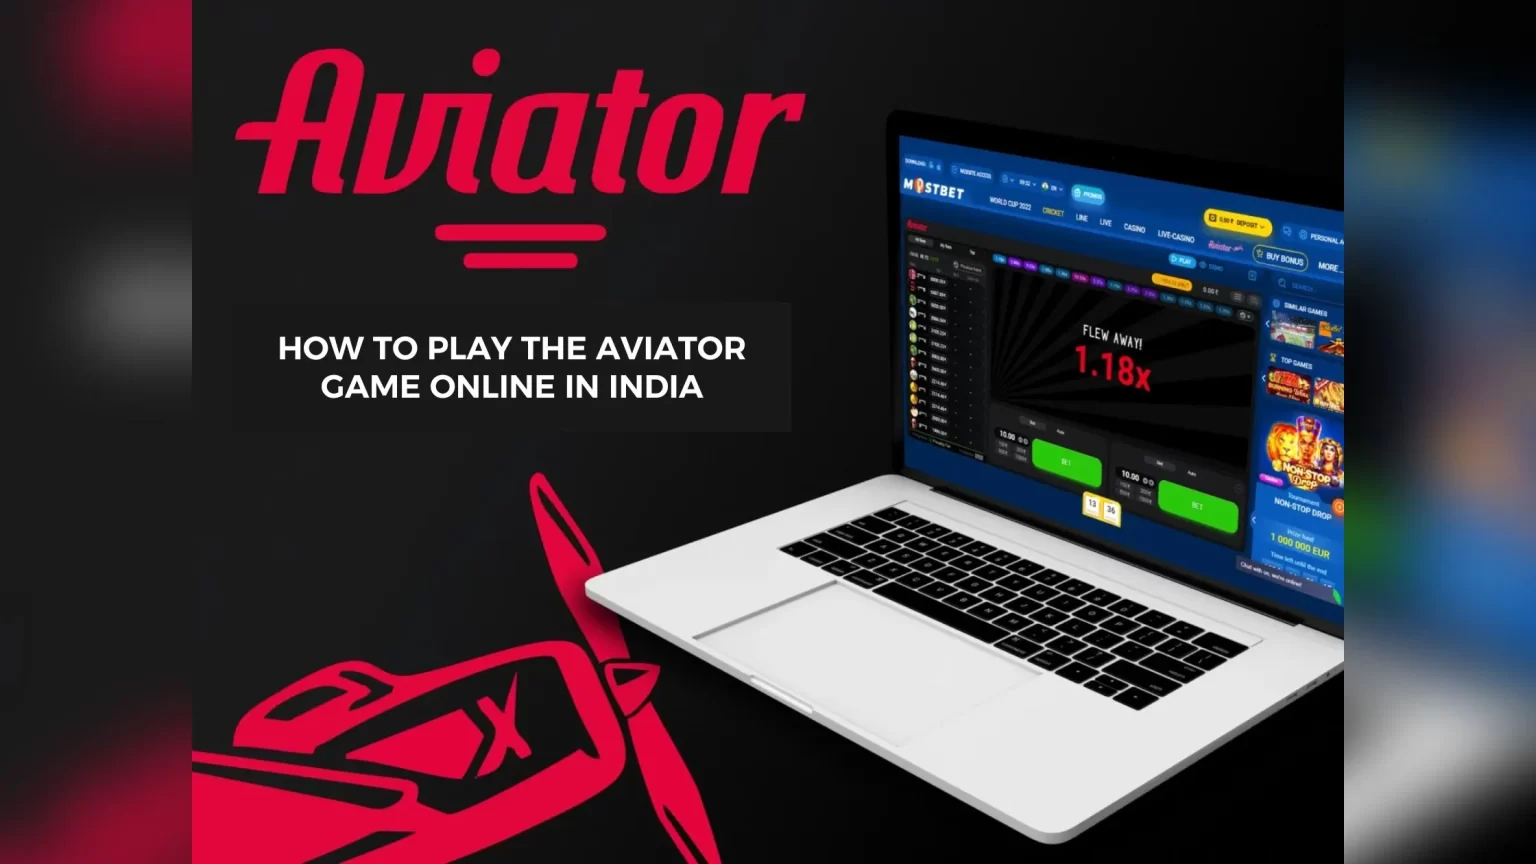 Spielen Sie Aviator 1xBet online: So spielen Sie das Aviator-Spiel um Geld